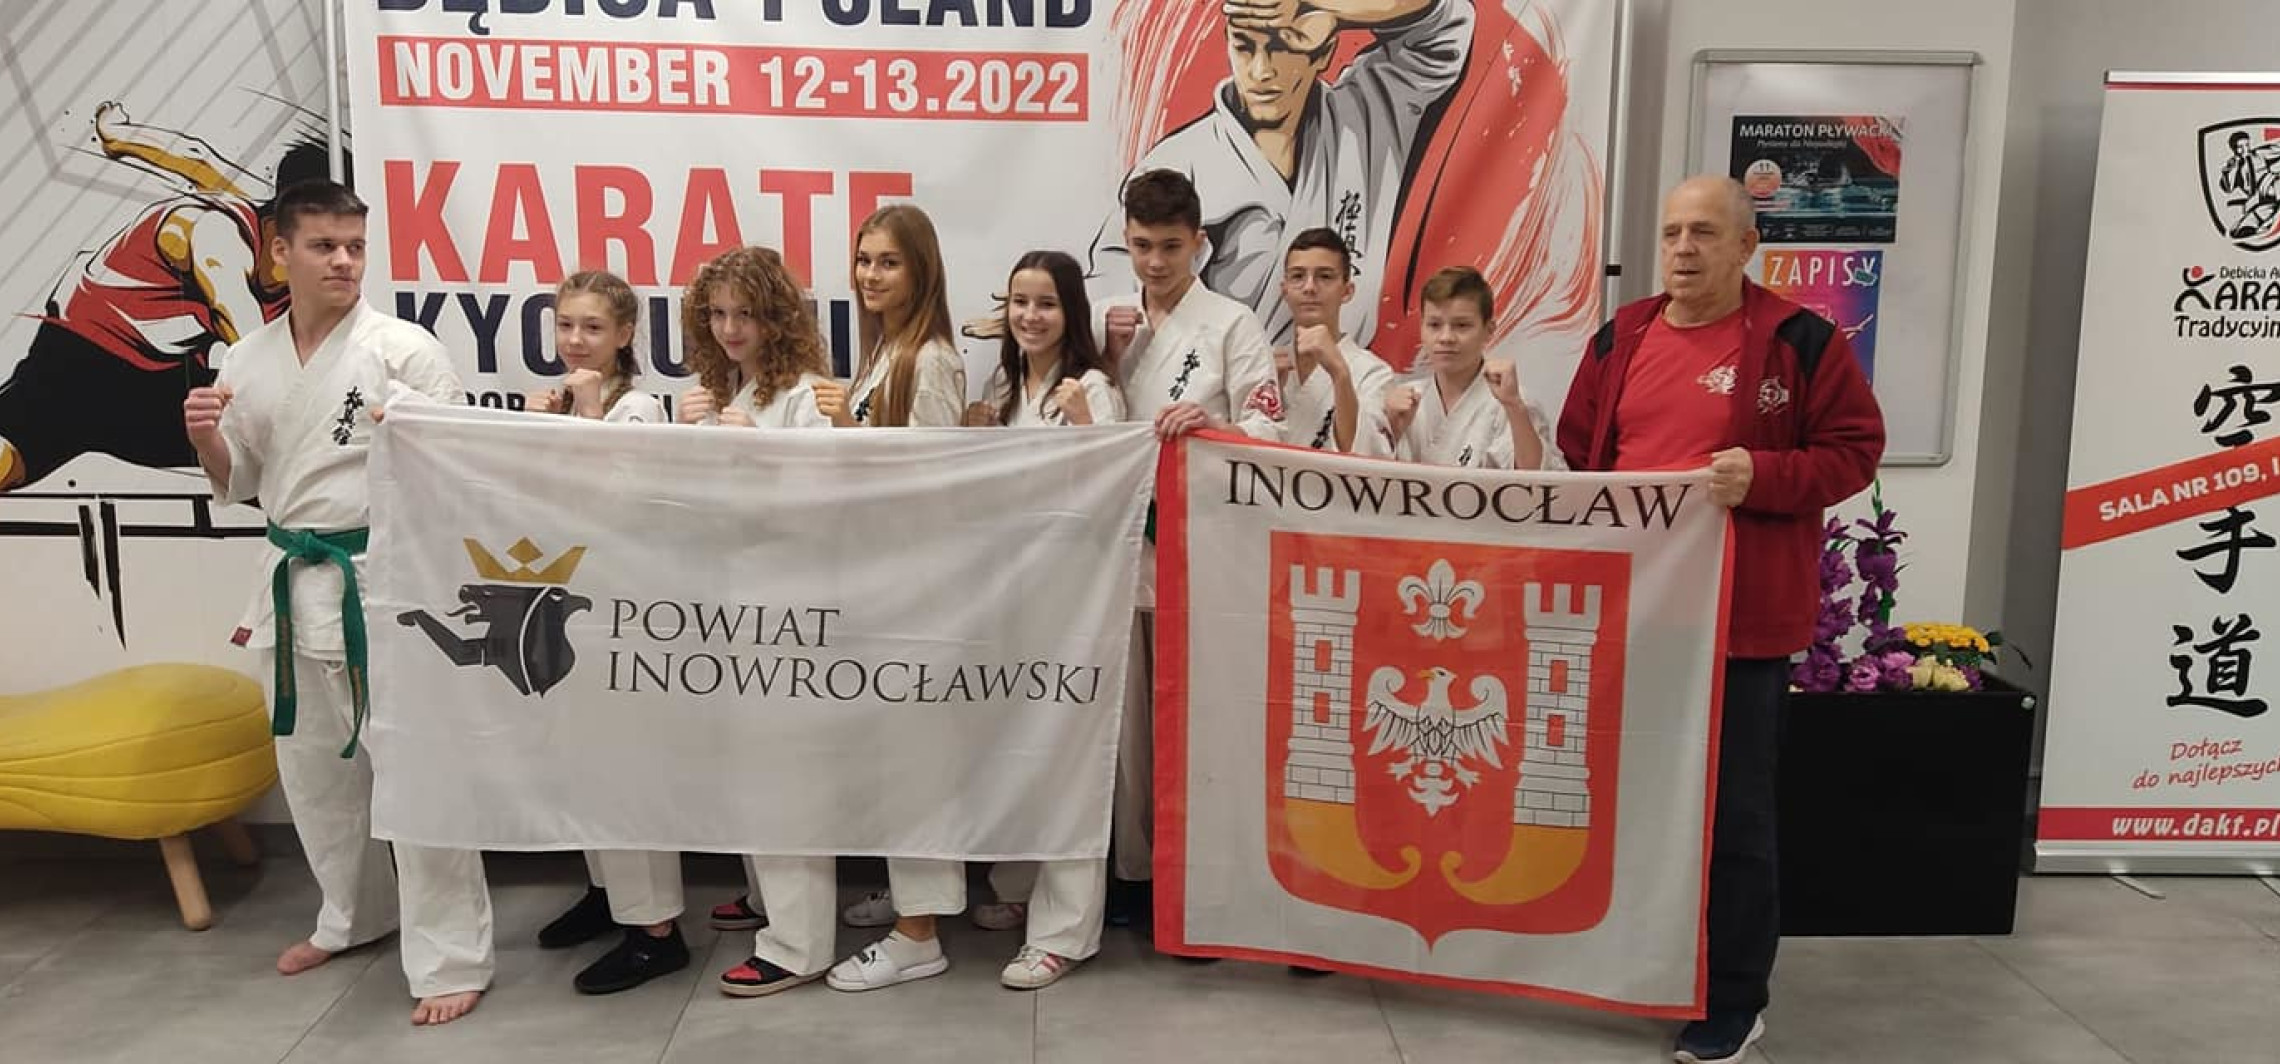 Inowrocław - Karatecy z Inowrocławia na podium Mistrzostw Europy